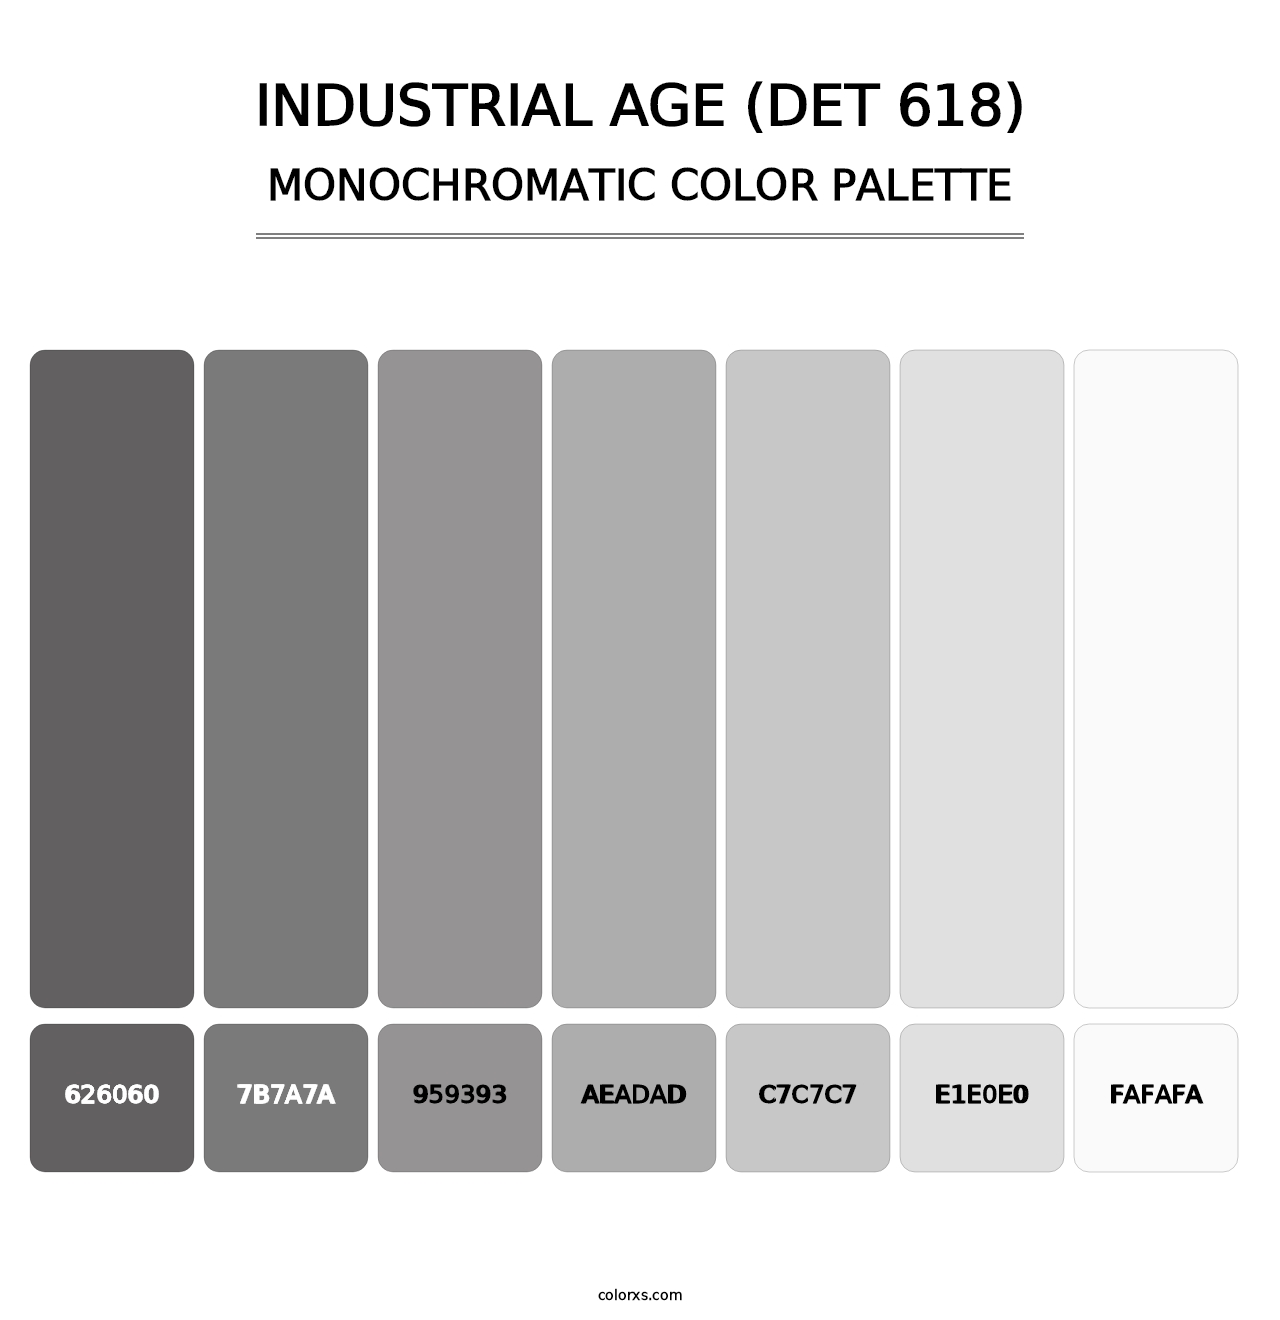 Industrial Age (DET 618) - Monochromatic Color Palette